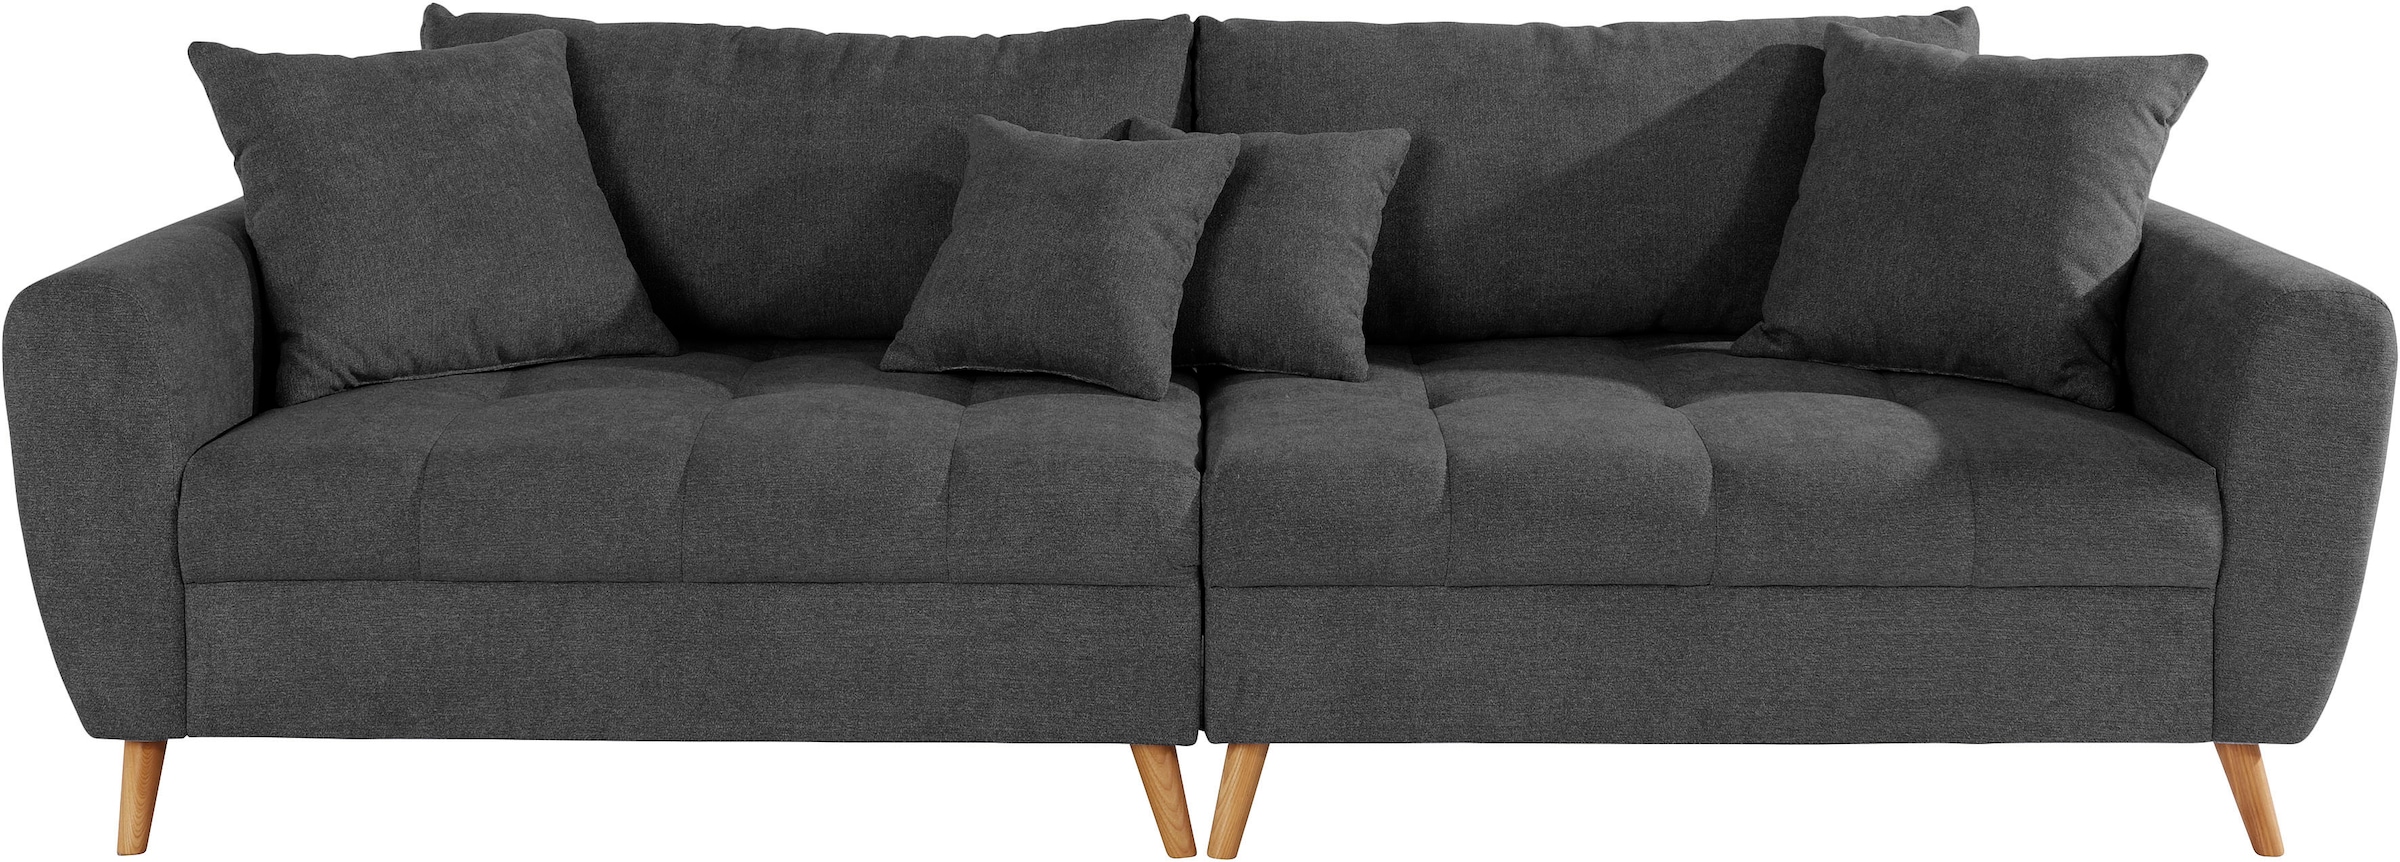 Home affaire Big-Sofa Luxus«, für auf bestellen Polsterung Raten mit hochwertiger zu Sitzfläche bis kg »Penelope 140 besonders pro